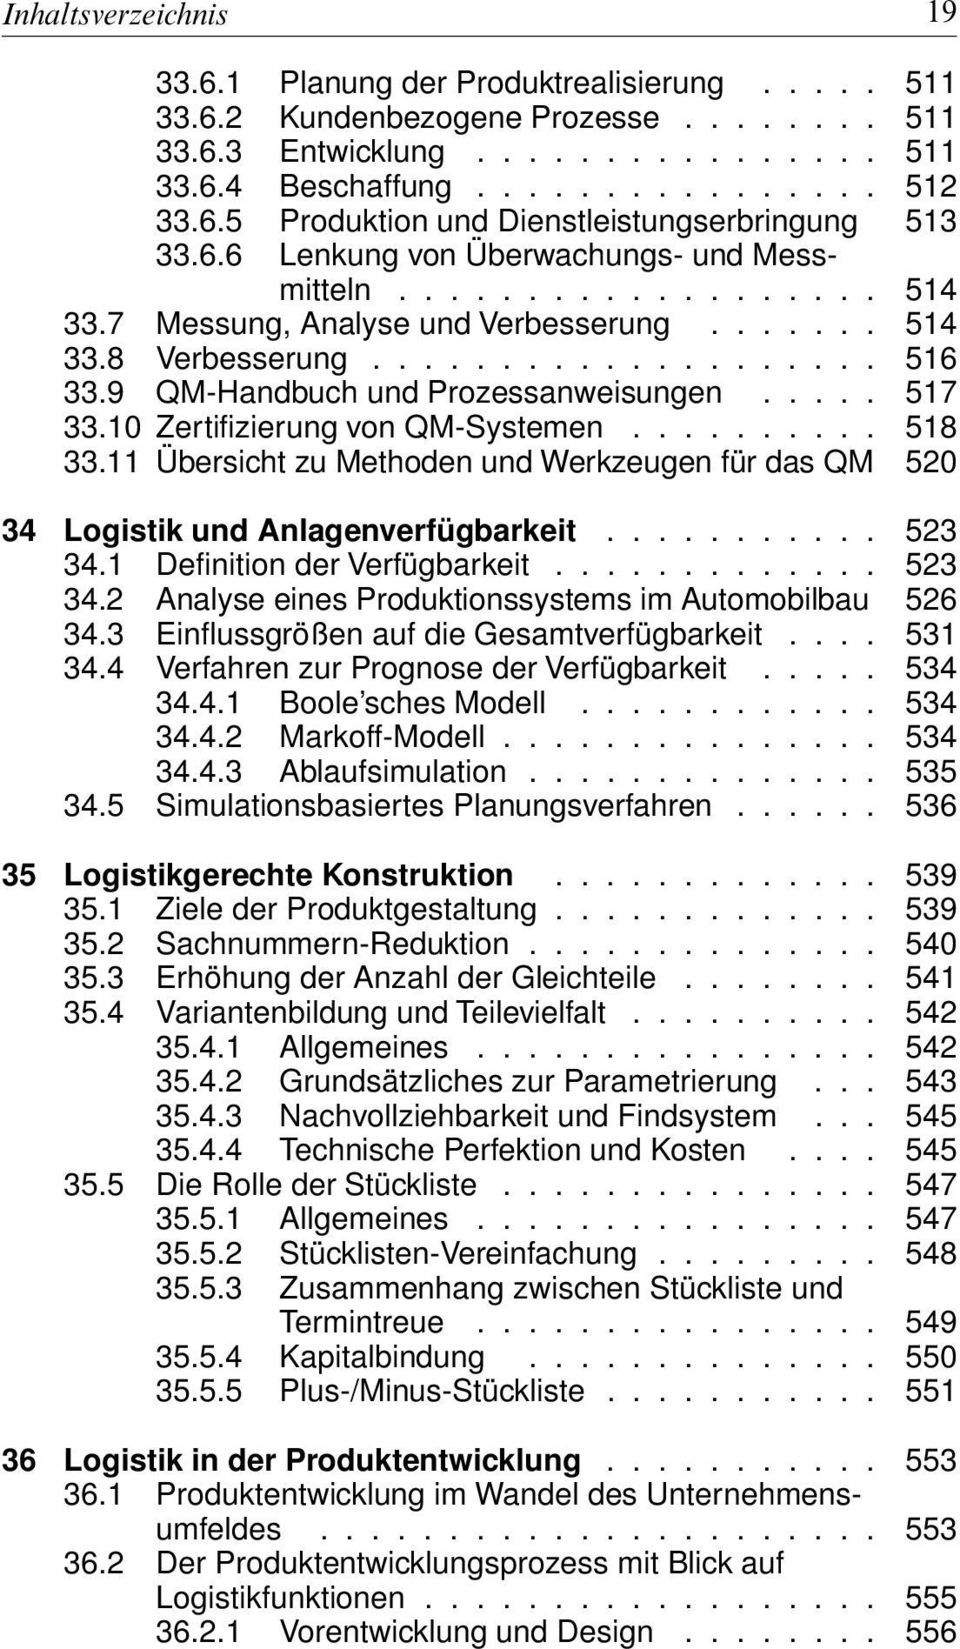 9 QM-Handbuch und Prozessanweisungen..... 517 33.10 Zertifizierung von QM-Systemen.......... 518 33.11 Übersicht zu Methoden und Werkzeugen für das QM 520 34 Logistik und Anlagenverfügbarkeit........... 523 34.